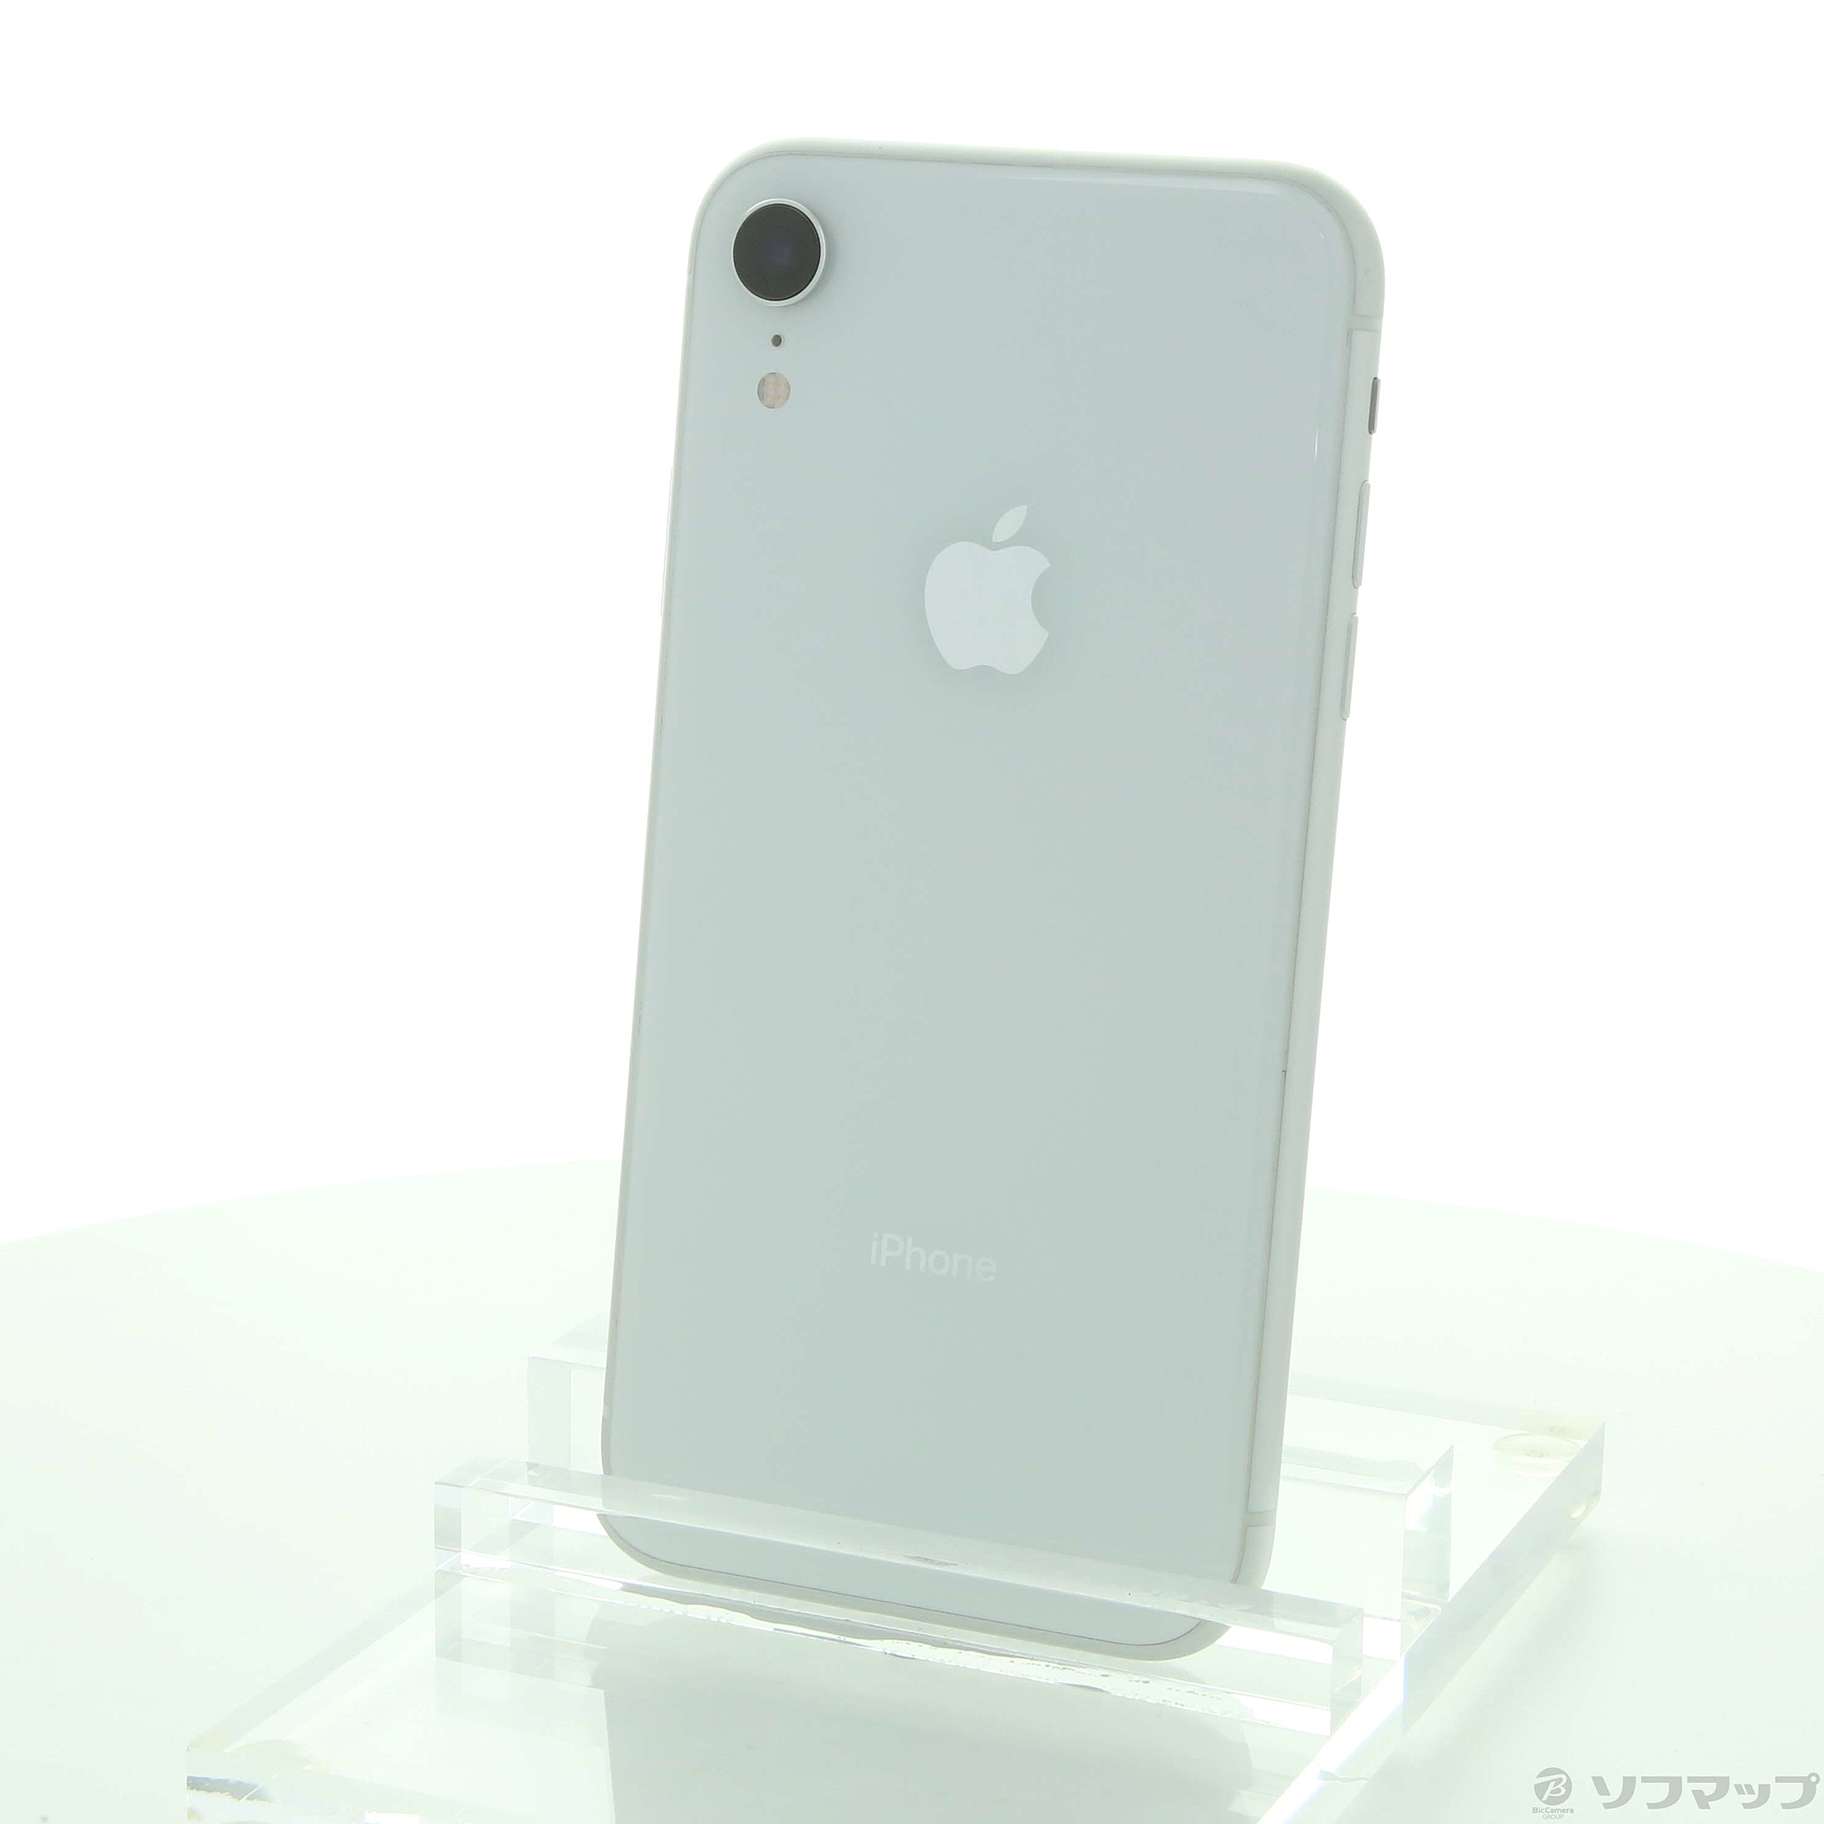 iPhone XR White 64 GB SIMフリー 展示品 www.krzysztofbialy.com